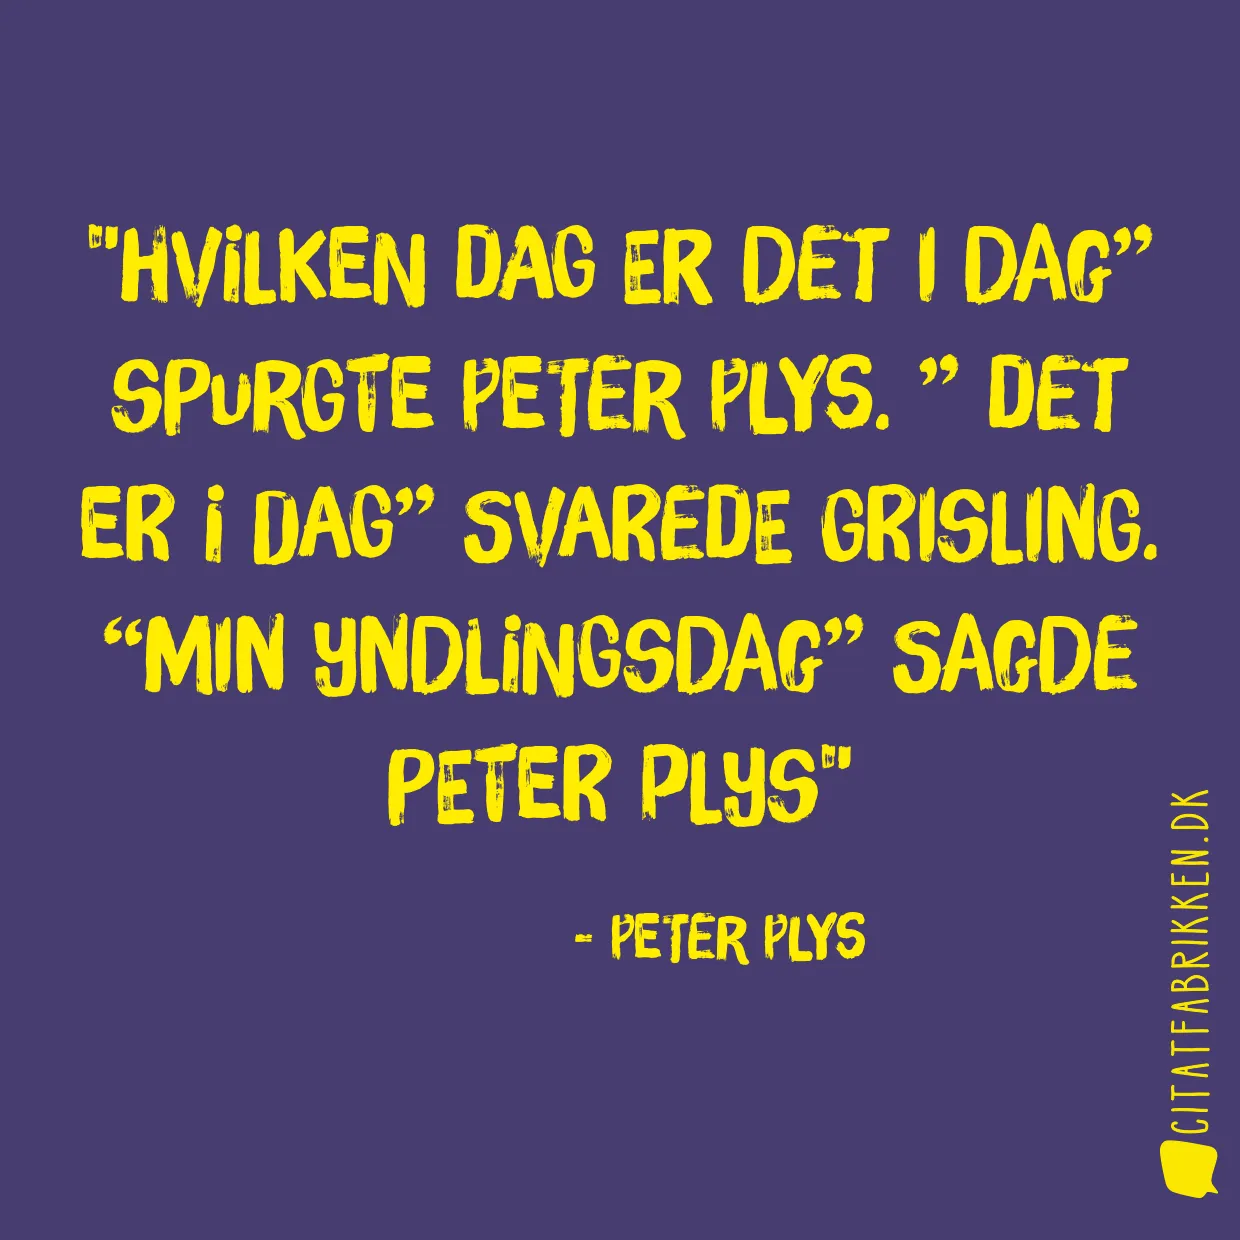 Hvilken dag er det i dag” spurgte Peter Plys. ” Det er i dag” svarede Grisling. “Min yndlingsdag” sagde Peter plys